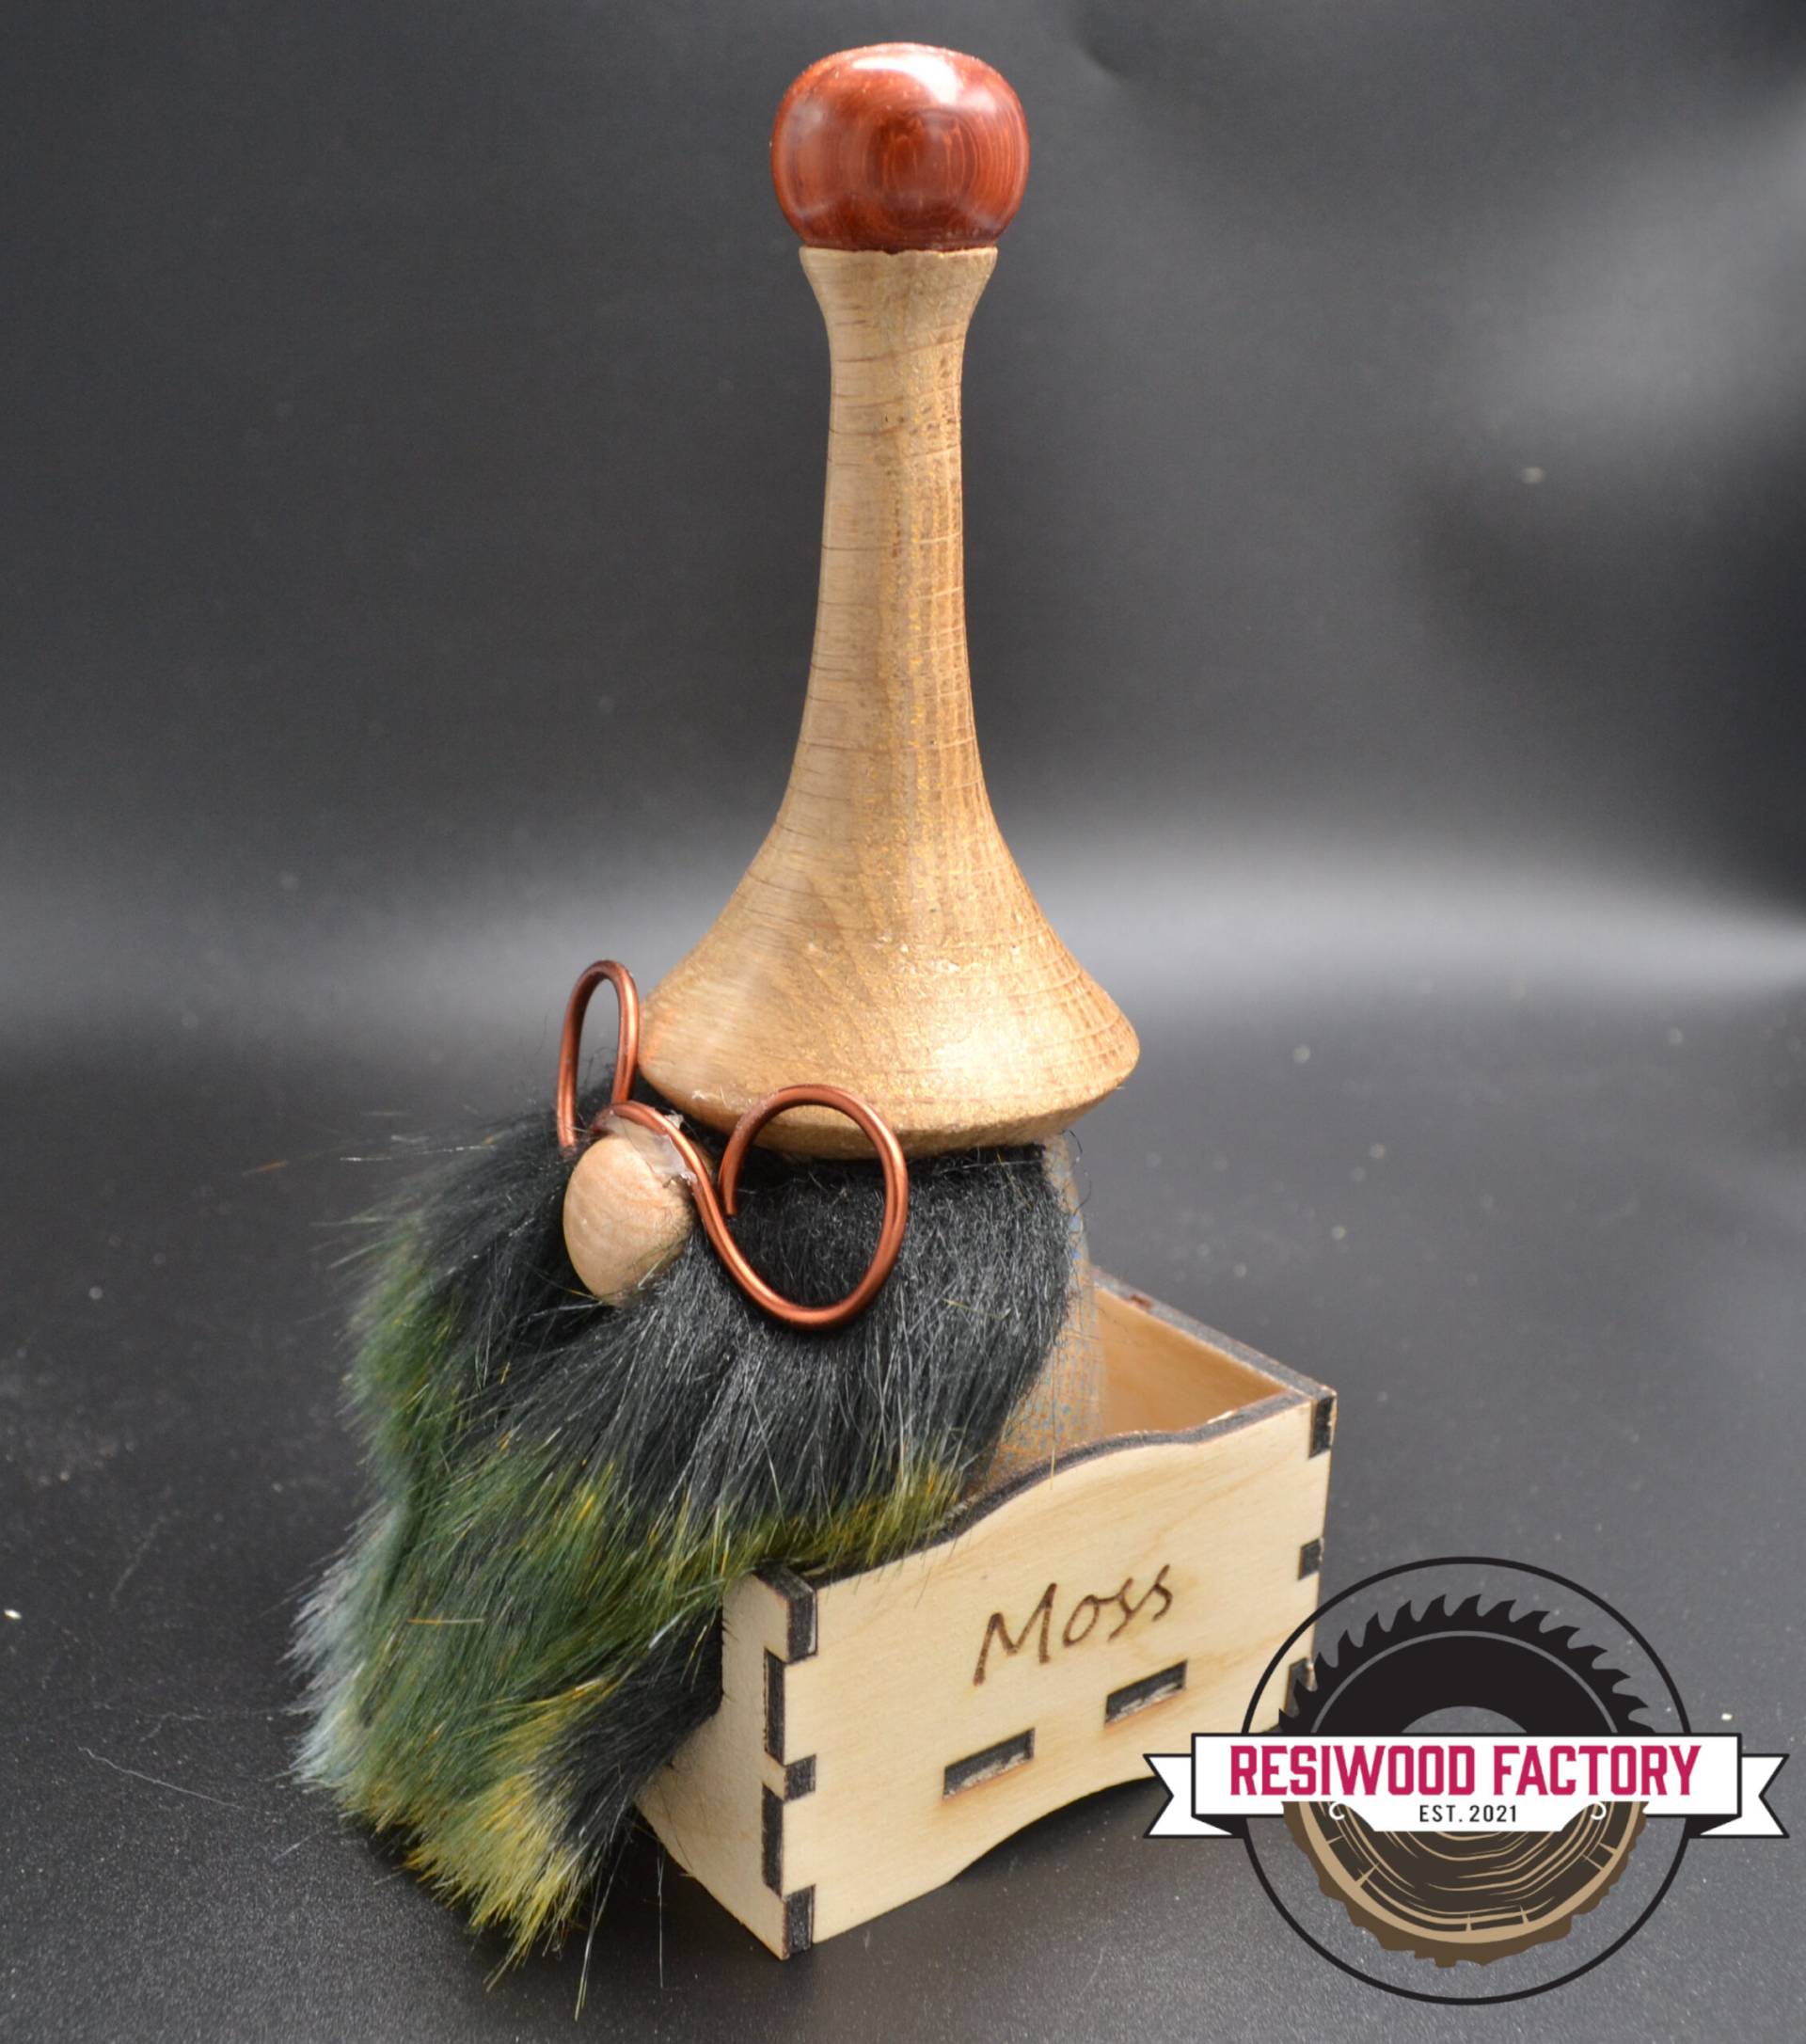 "Nisses" nommé Moss (Gnome) en bois